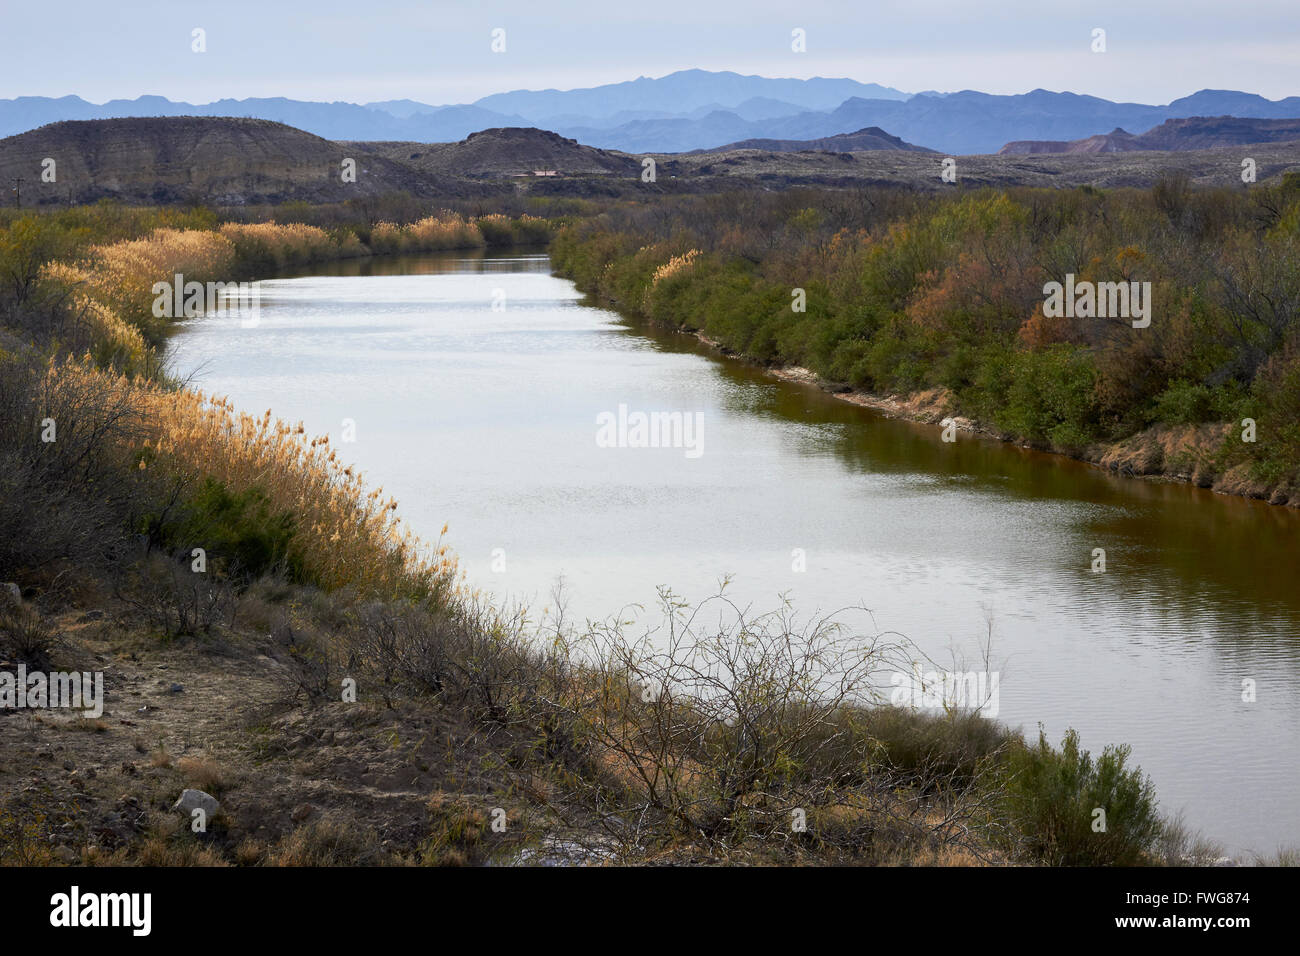 Rio Grande River an der Grenze von Texas Mexiko in Big Bend Country, Süd-Texas. Mexiko ist auf der rechten Seite. Stockfoto